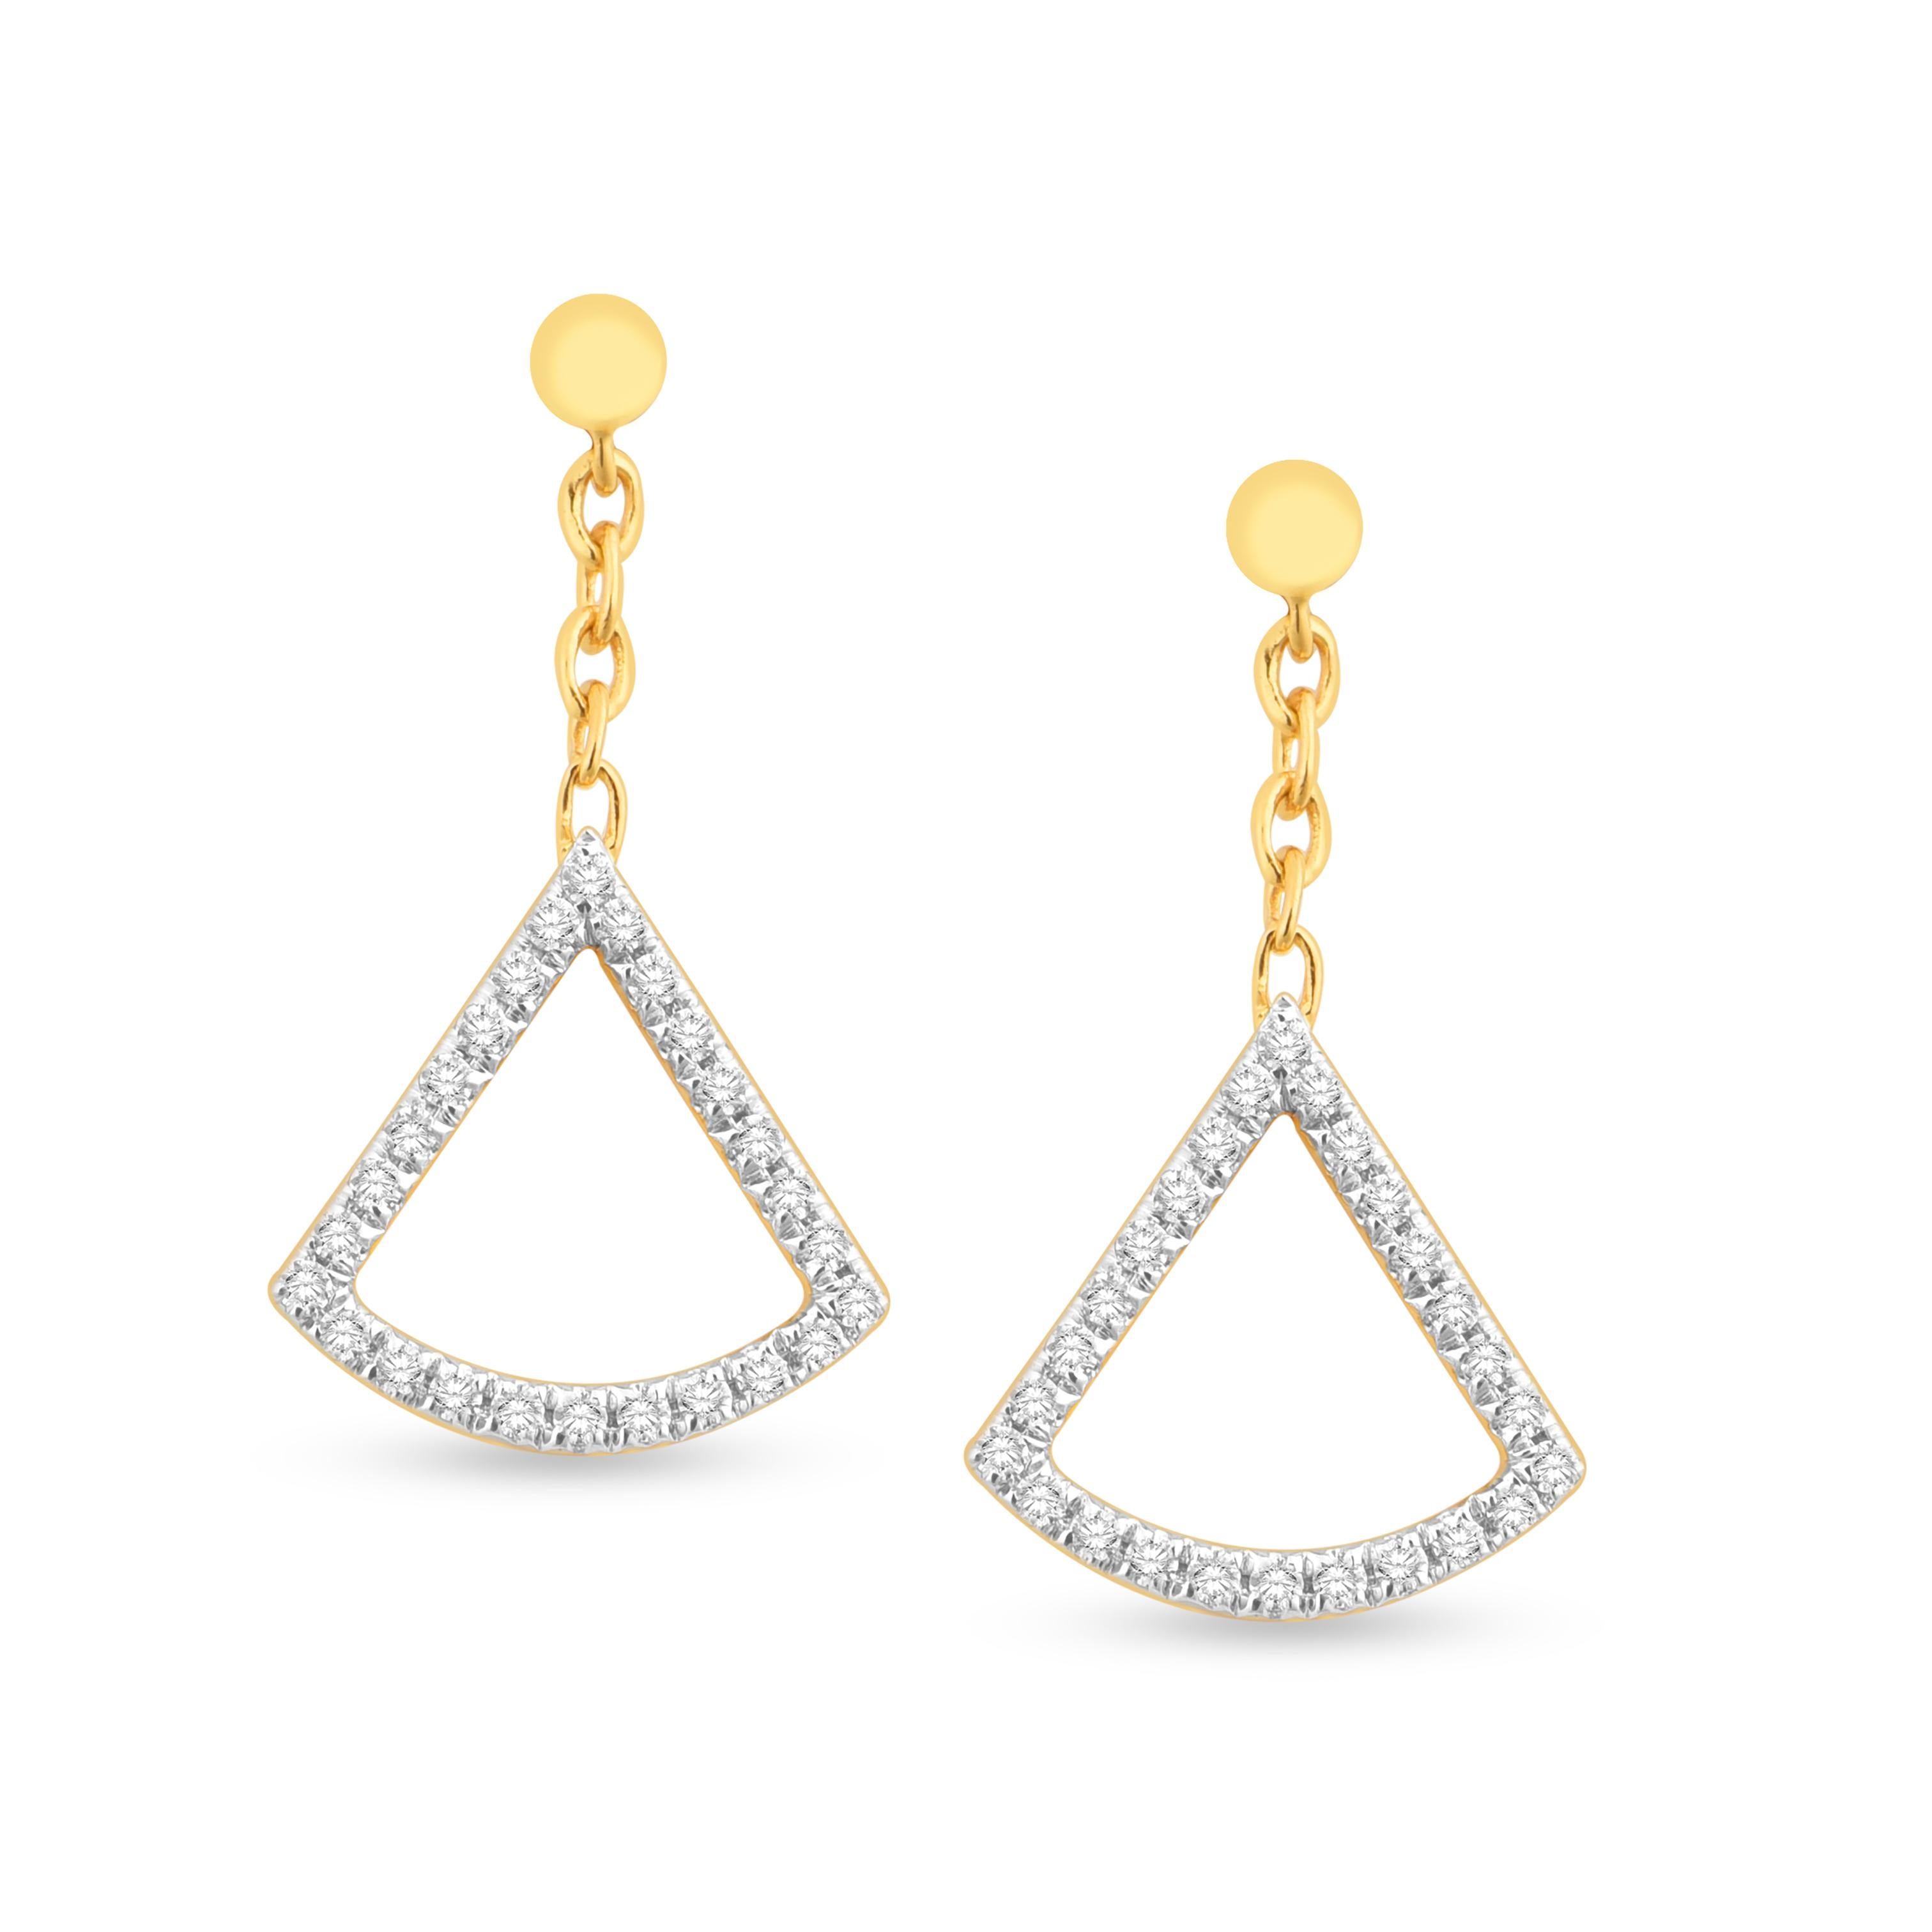 Ces boucles d'oreilles pendantes en diamant s'inspirent des feuilles en forme d'éventail de l'arbre Ginkgo. Ces boucles d'oreilles uniques sont disponibles en or jaune 14K et en or blanc 14K.

Boucles d'oreilles en or blanc 14K à diamant